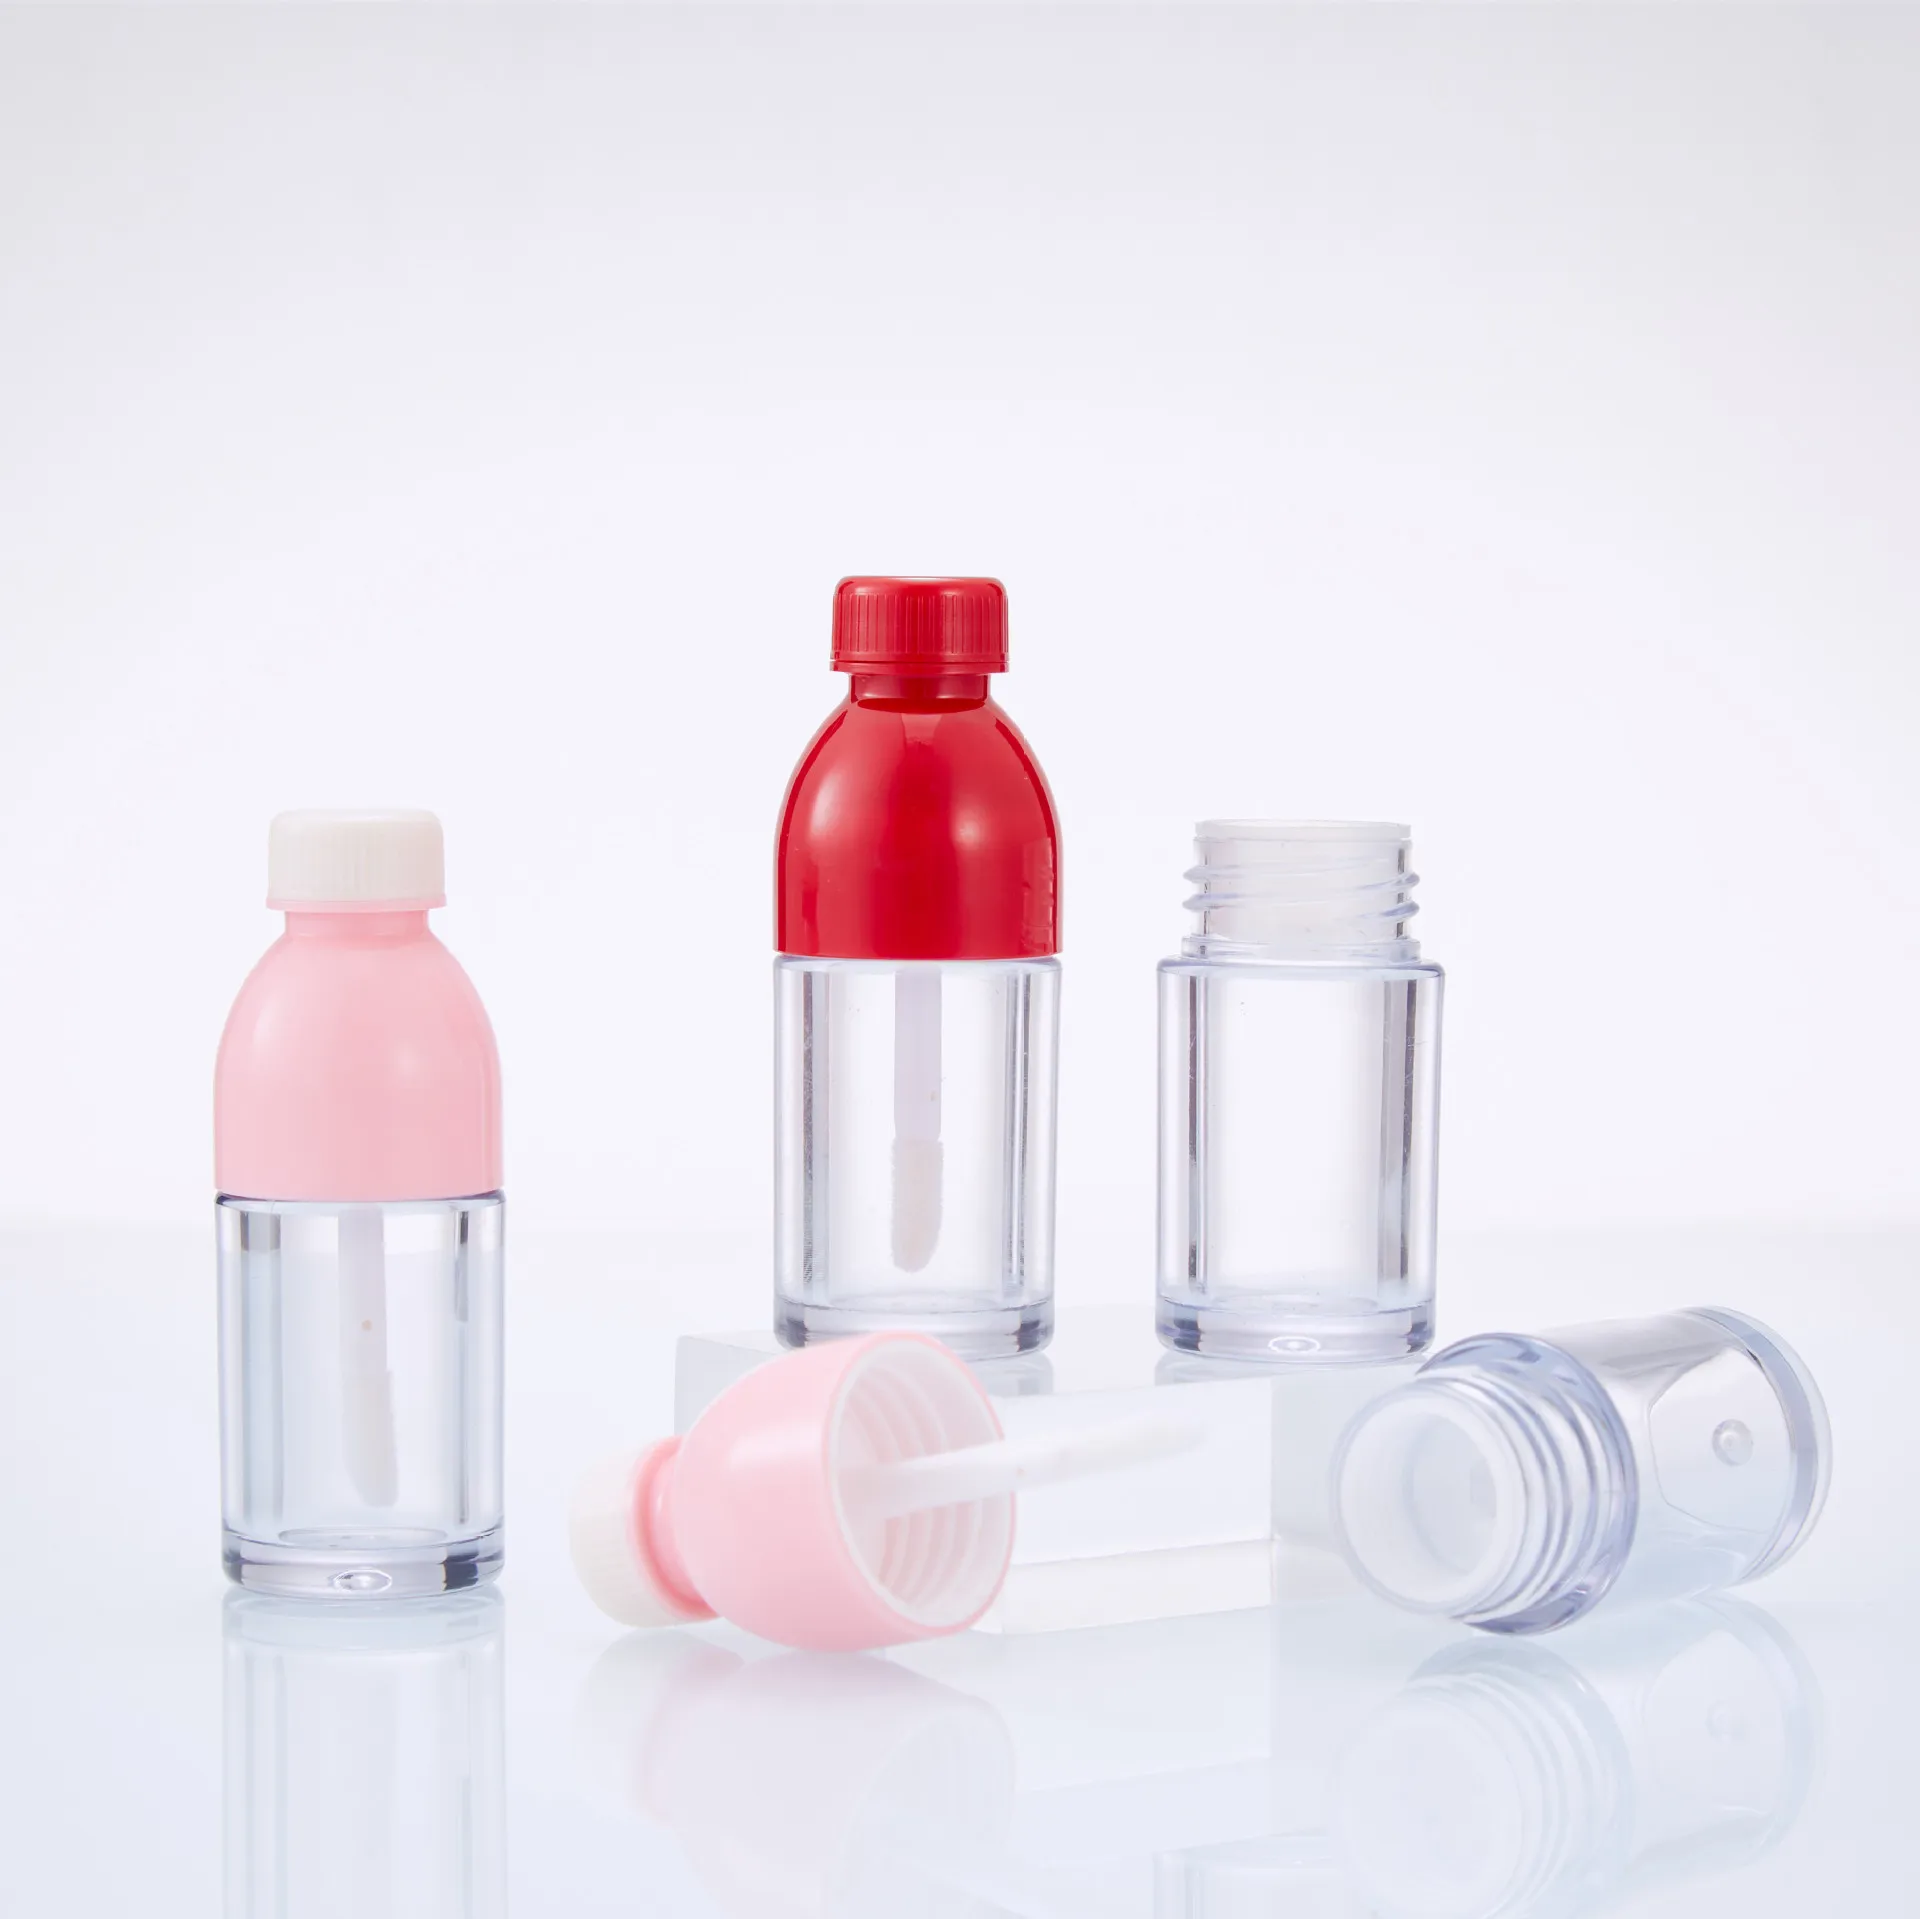 

Пустая красная розовая трубка для блеска для губ 8 мл в форме бутылки кока-колы, фотолампа 36 шт.